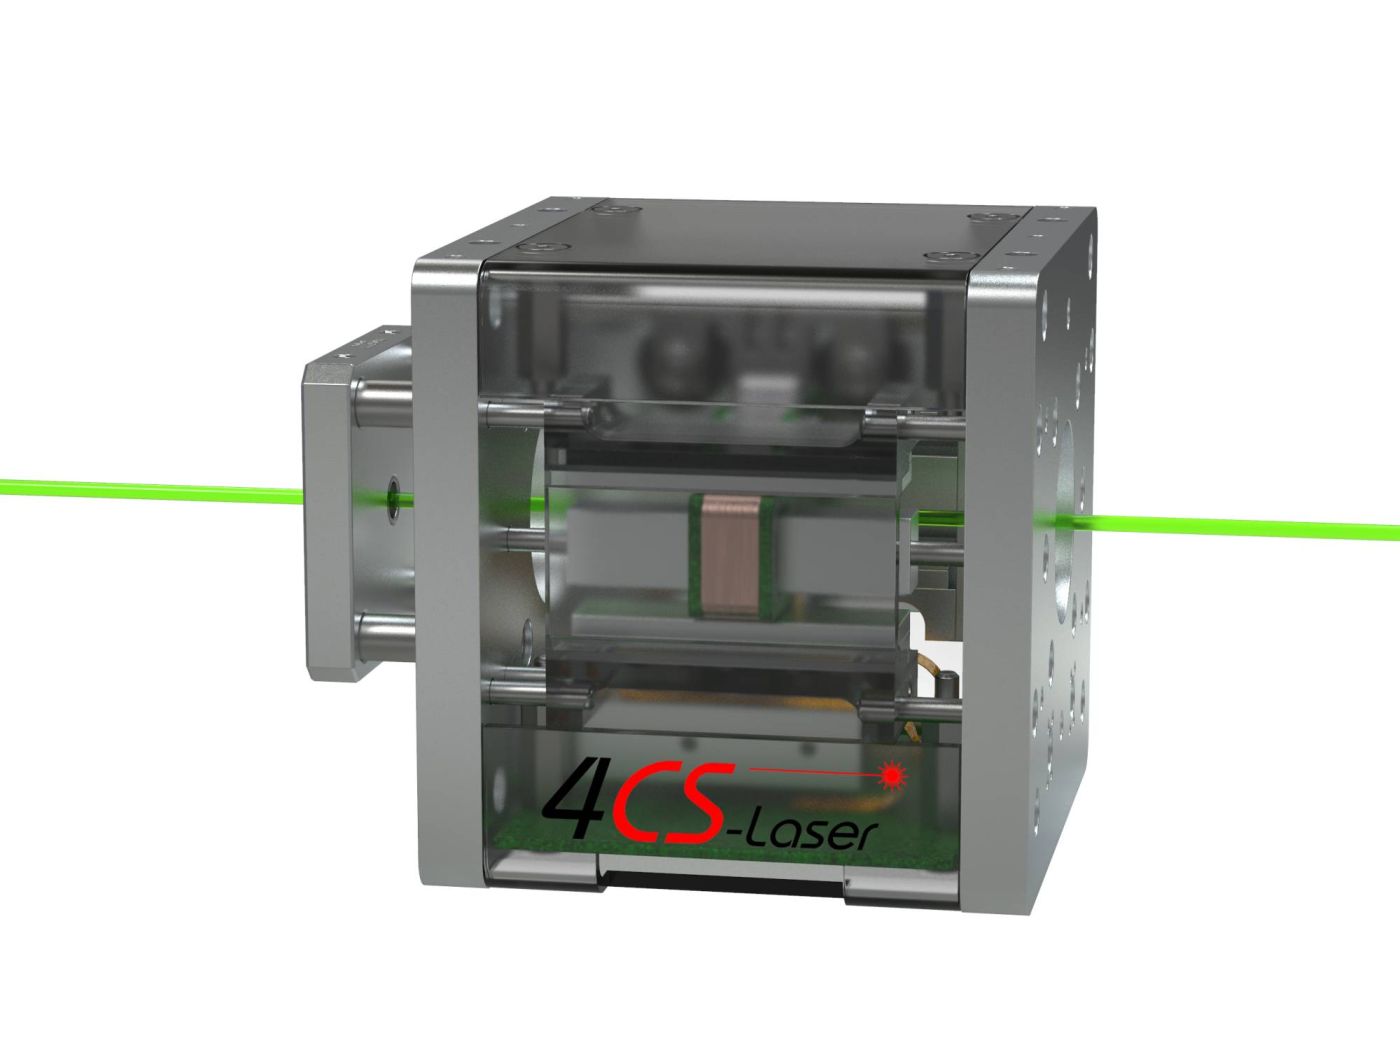 Die Z-Fokuslinse für die variable Einstellung des Laserstrahl in Z-Richtung.